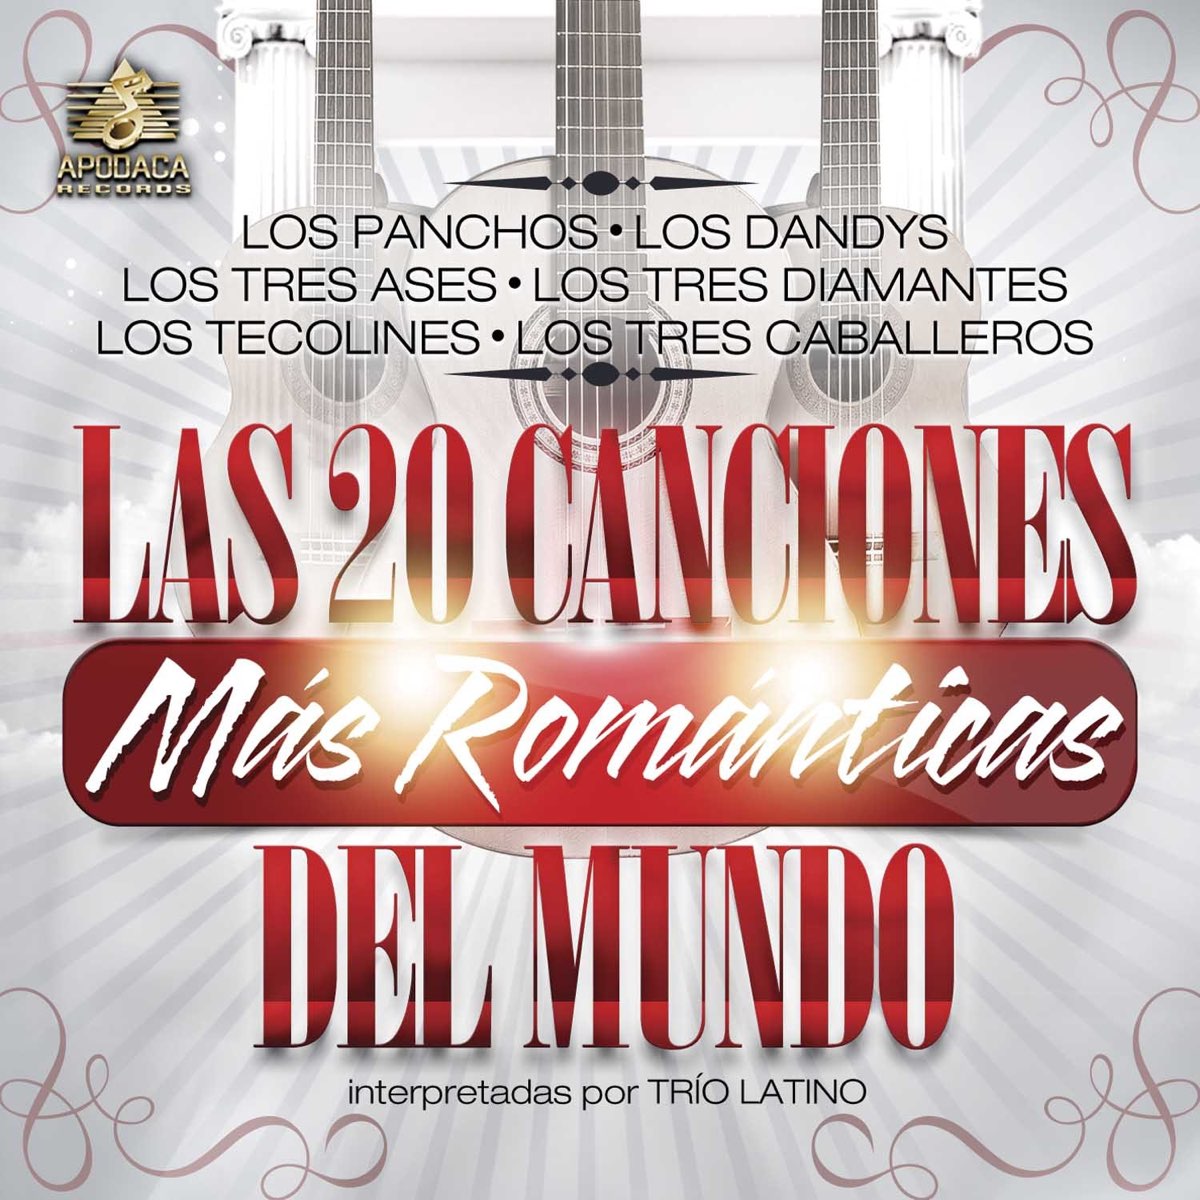 Las 20 Canciones Mas Románticas del Mundo by Trío Latino on Apple Music